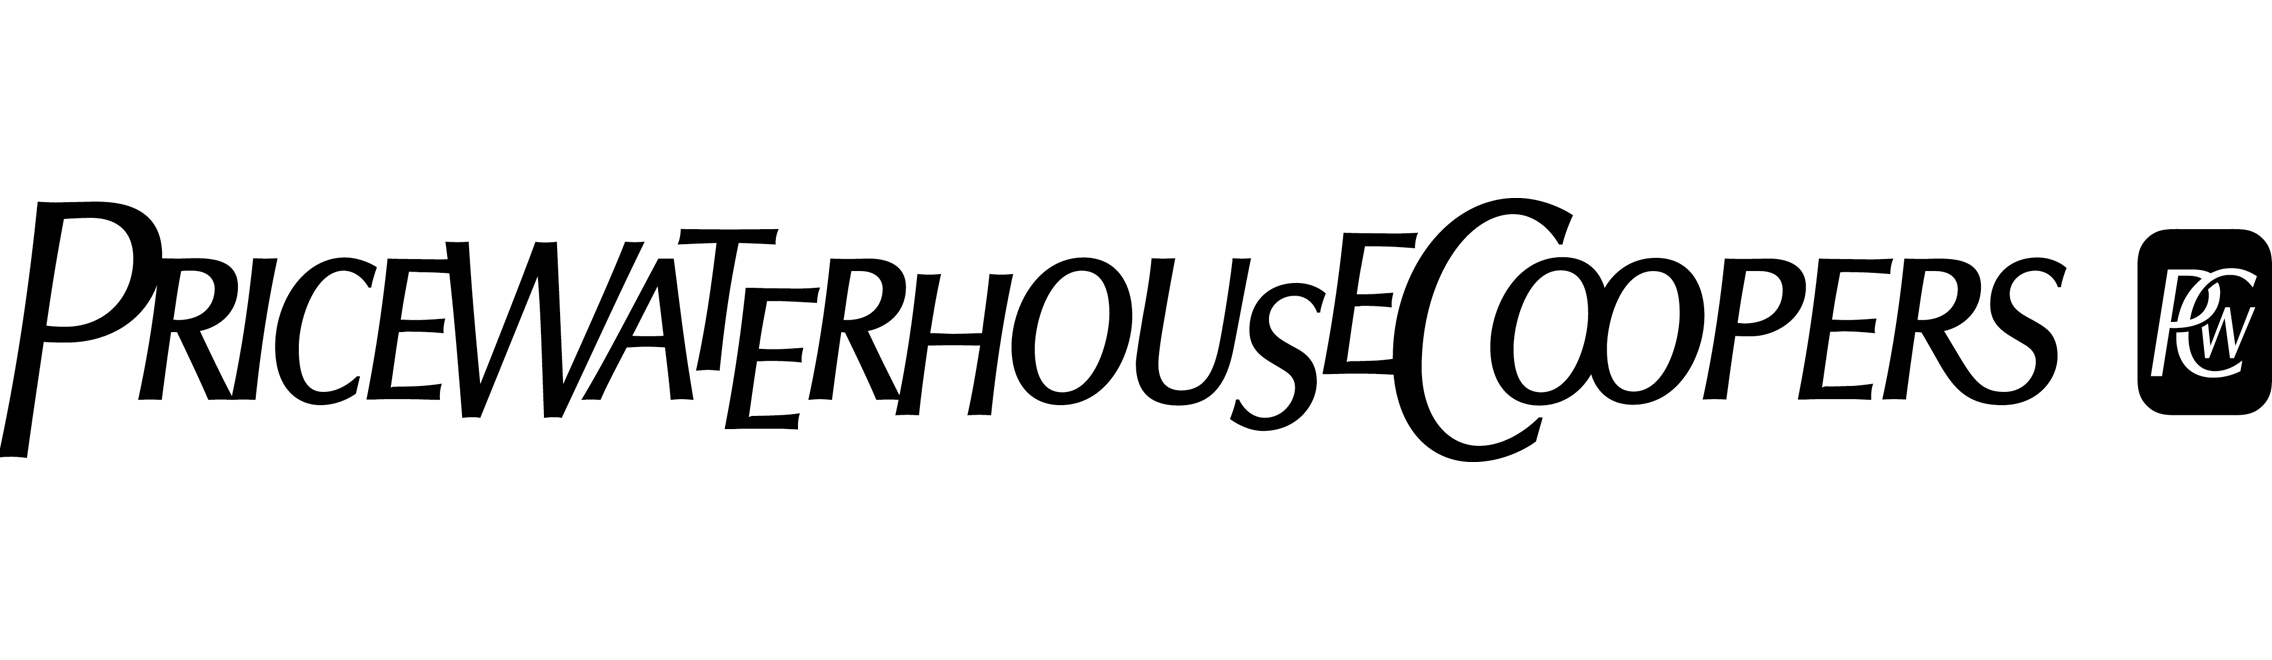 PricewaterhouseCoopers Logo - PwC logo | Logok